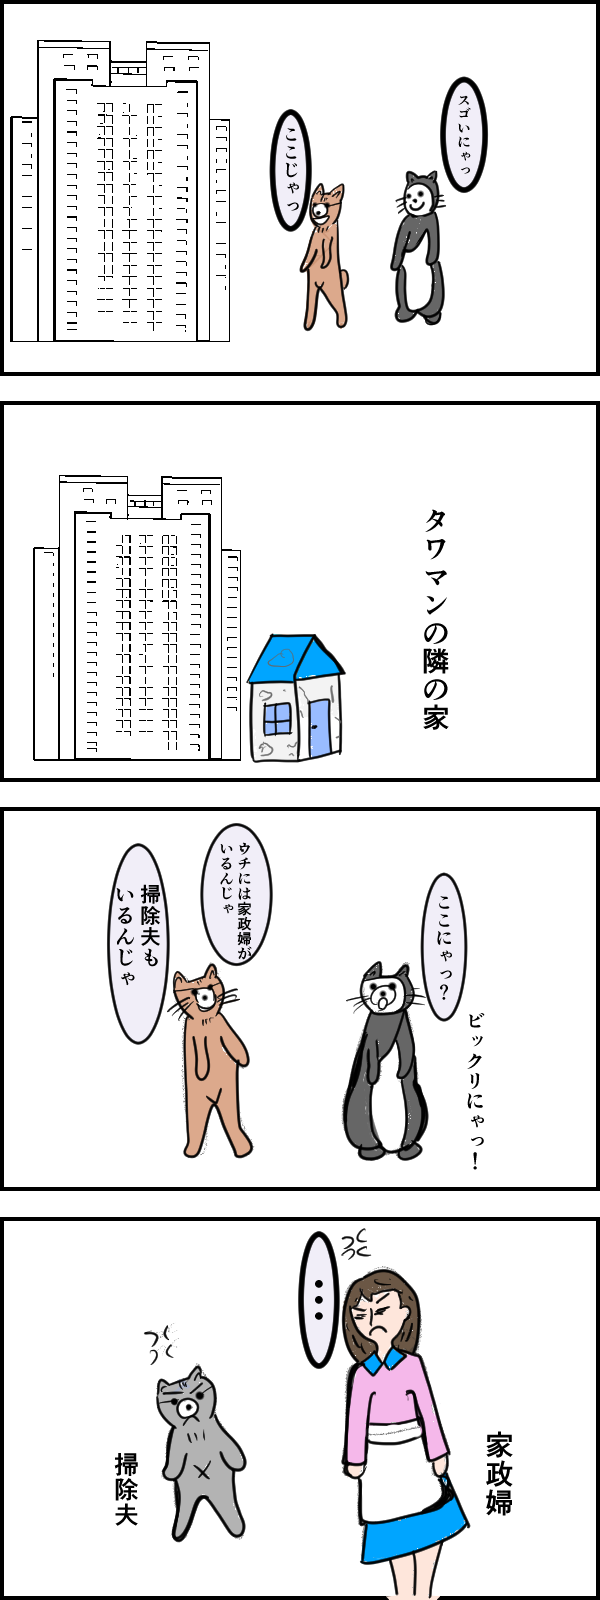 タワーマンションに住む猫_出力_001